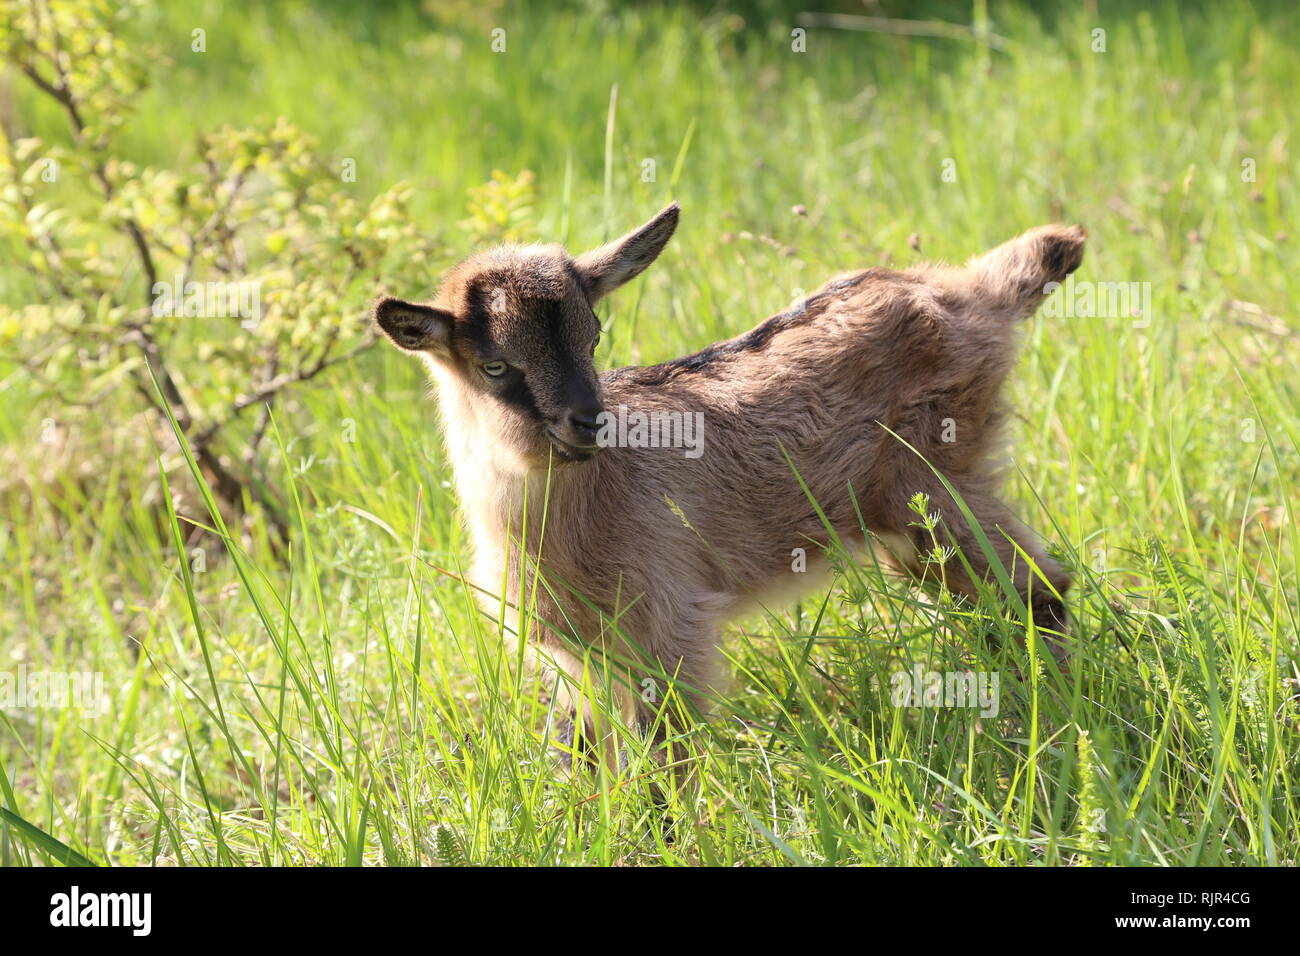 Goatling / Petit chèvre dans l'herbe Banque D'Images